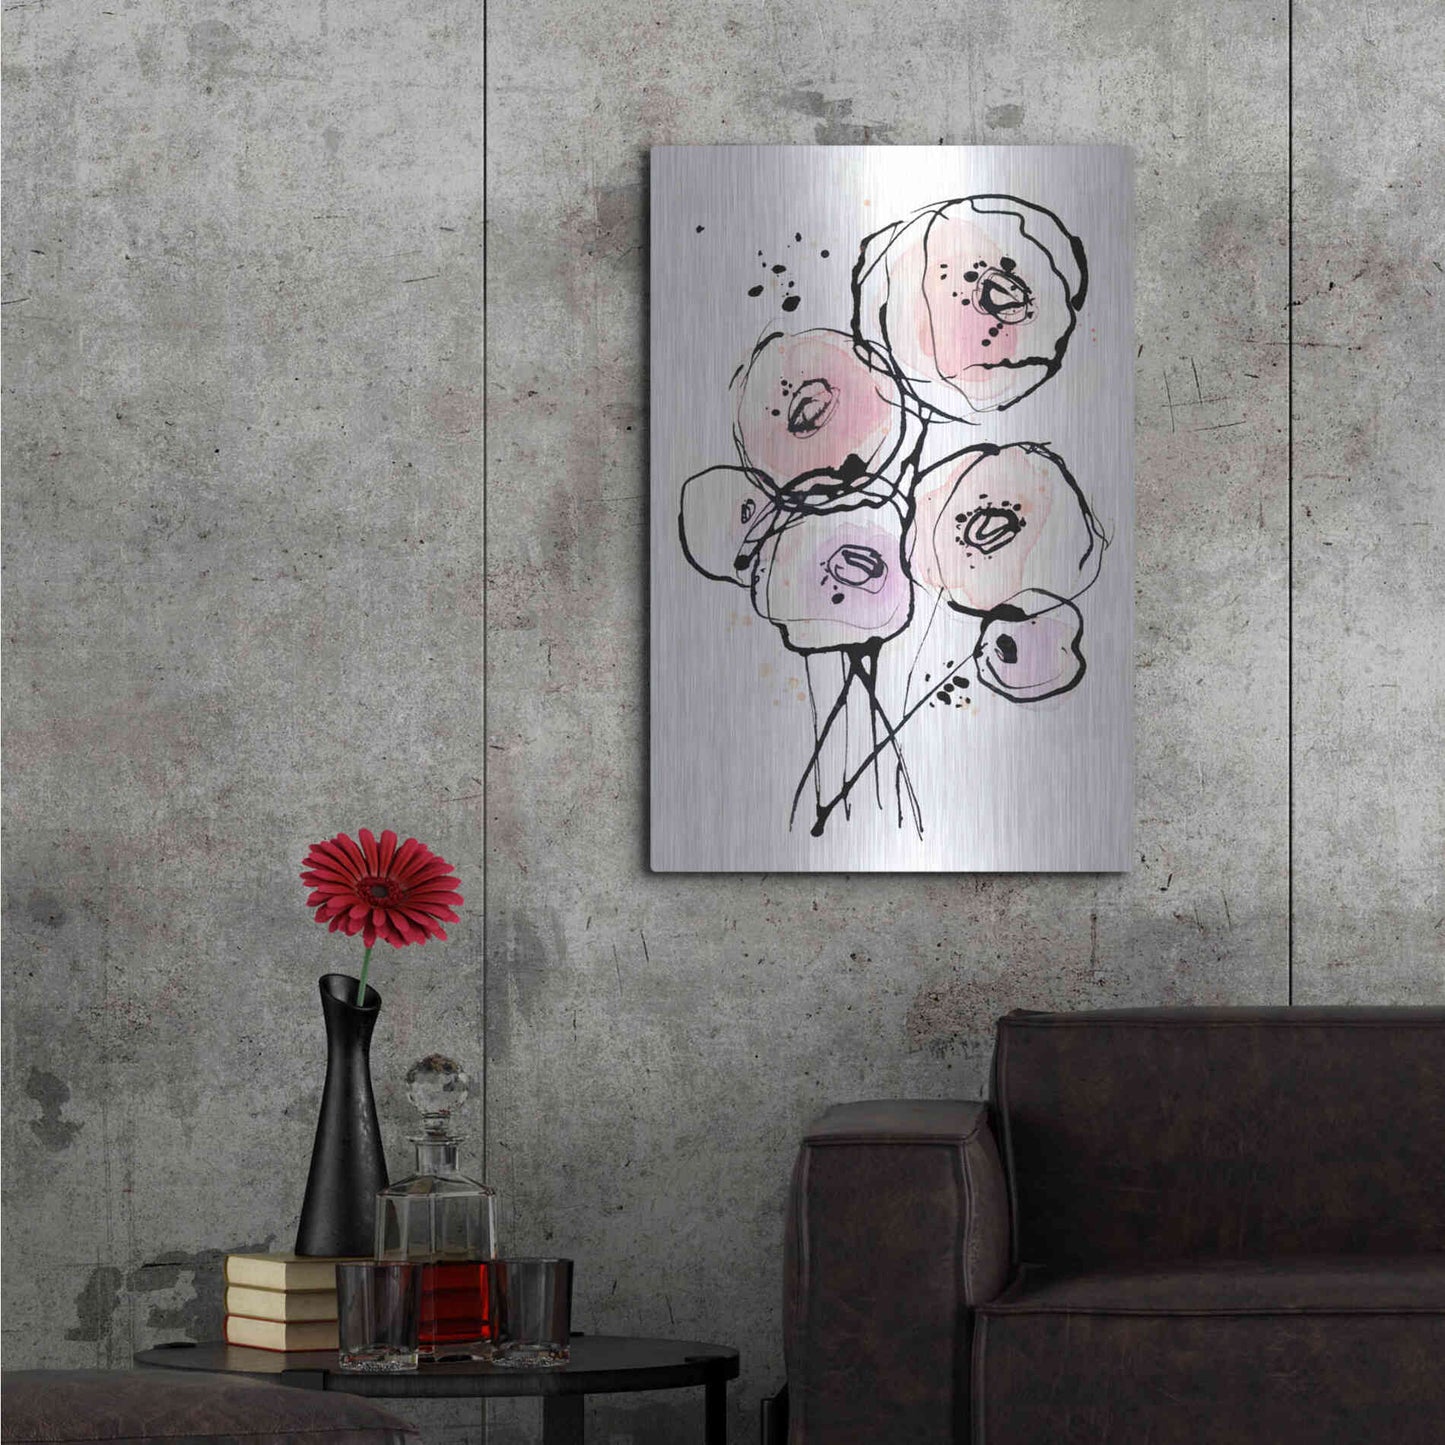 Luxe Metal Art 'Pink Mod 2' by Lesia Binkin Metal Wall Art,24x36